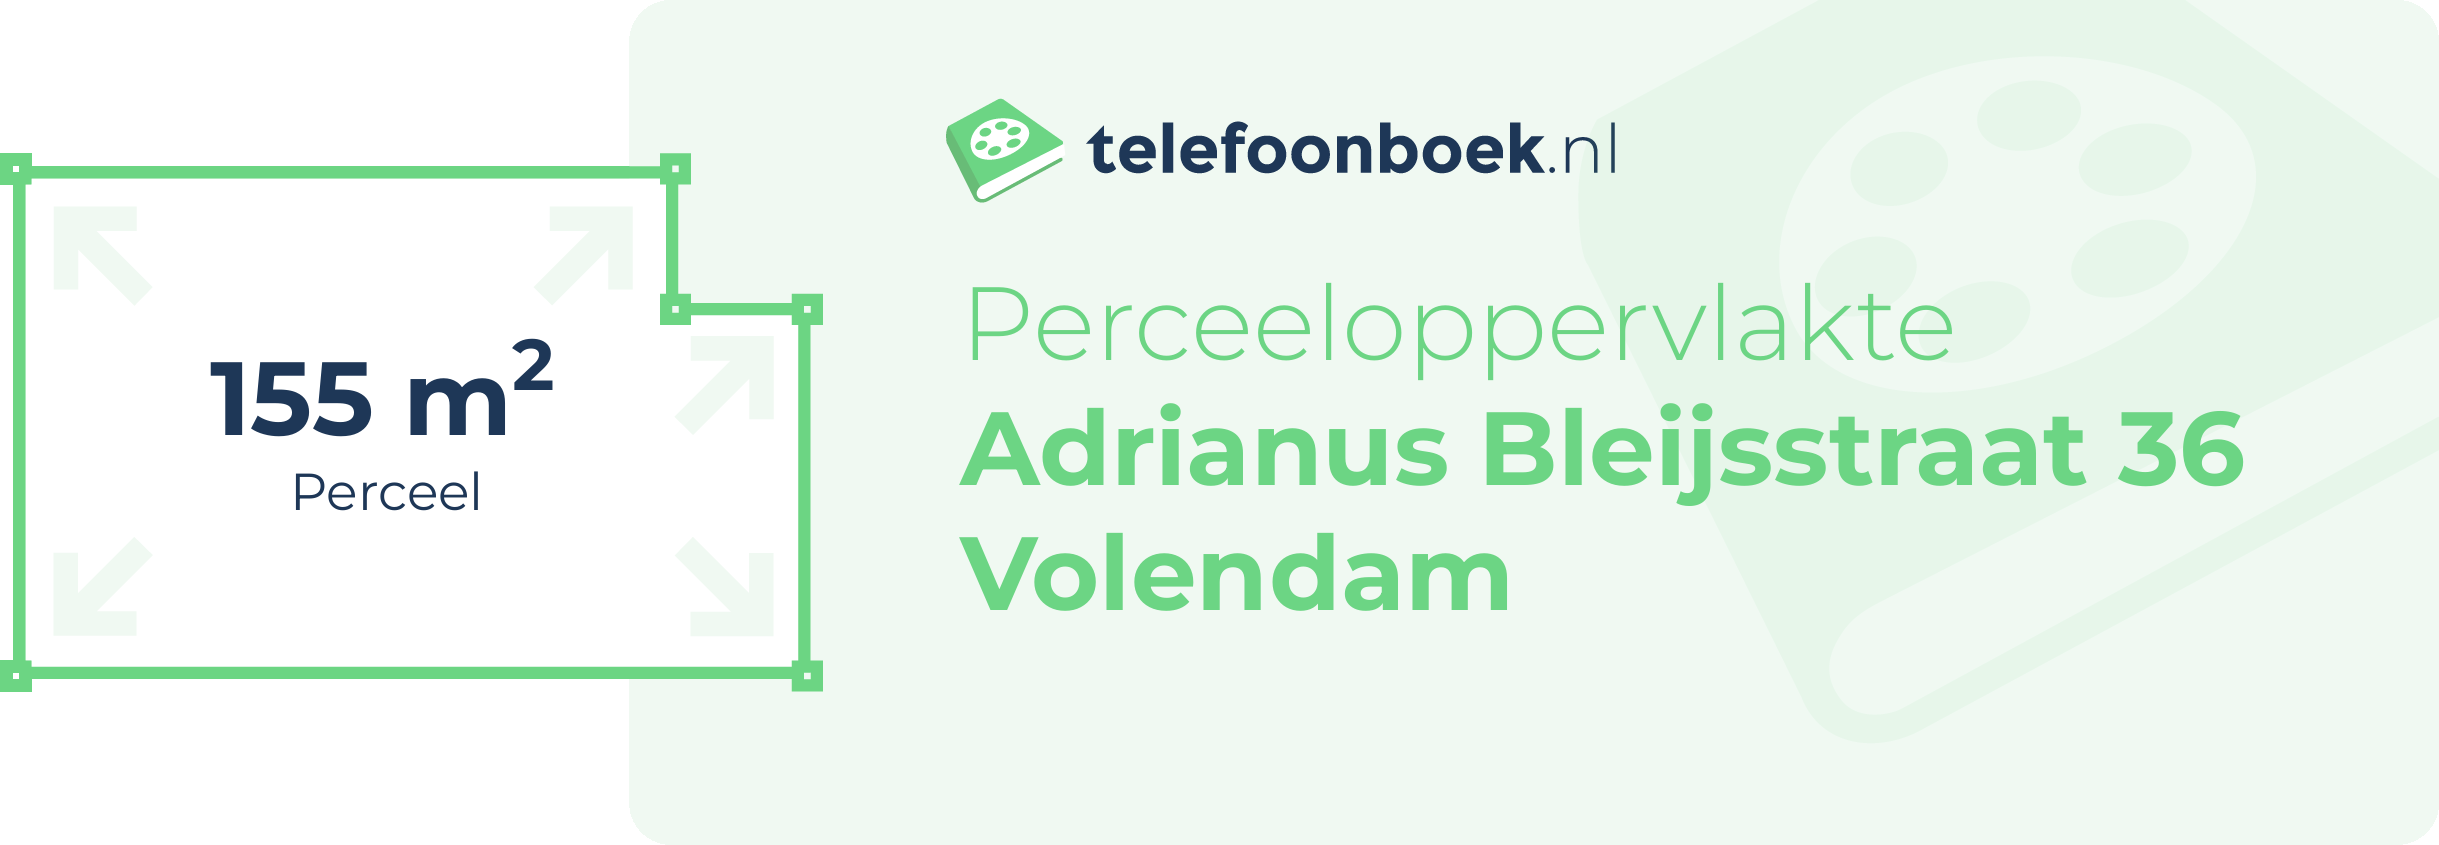 Perceeloppervlakte Adrianus Bleijsstraat 36 Volendam